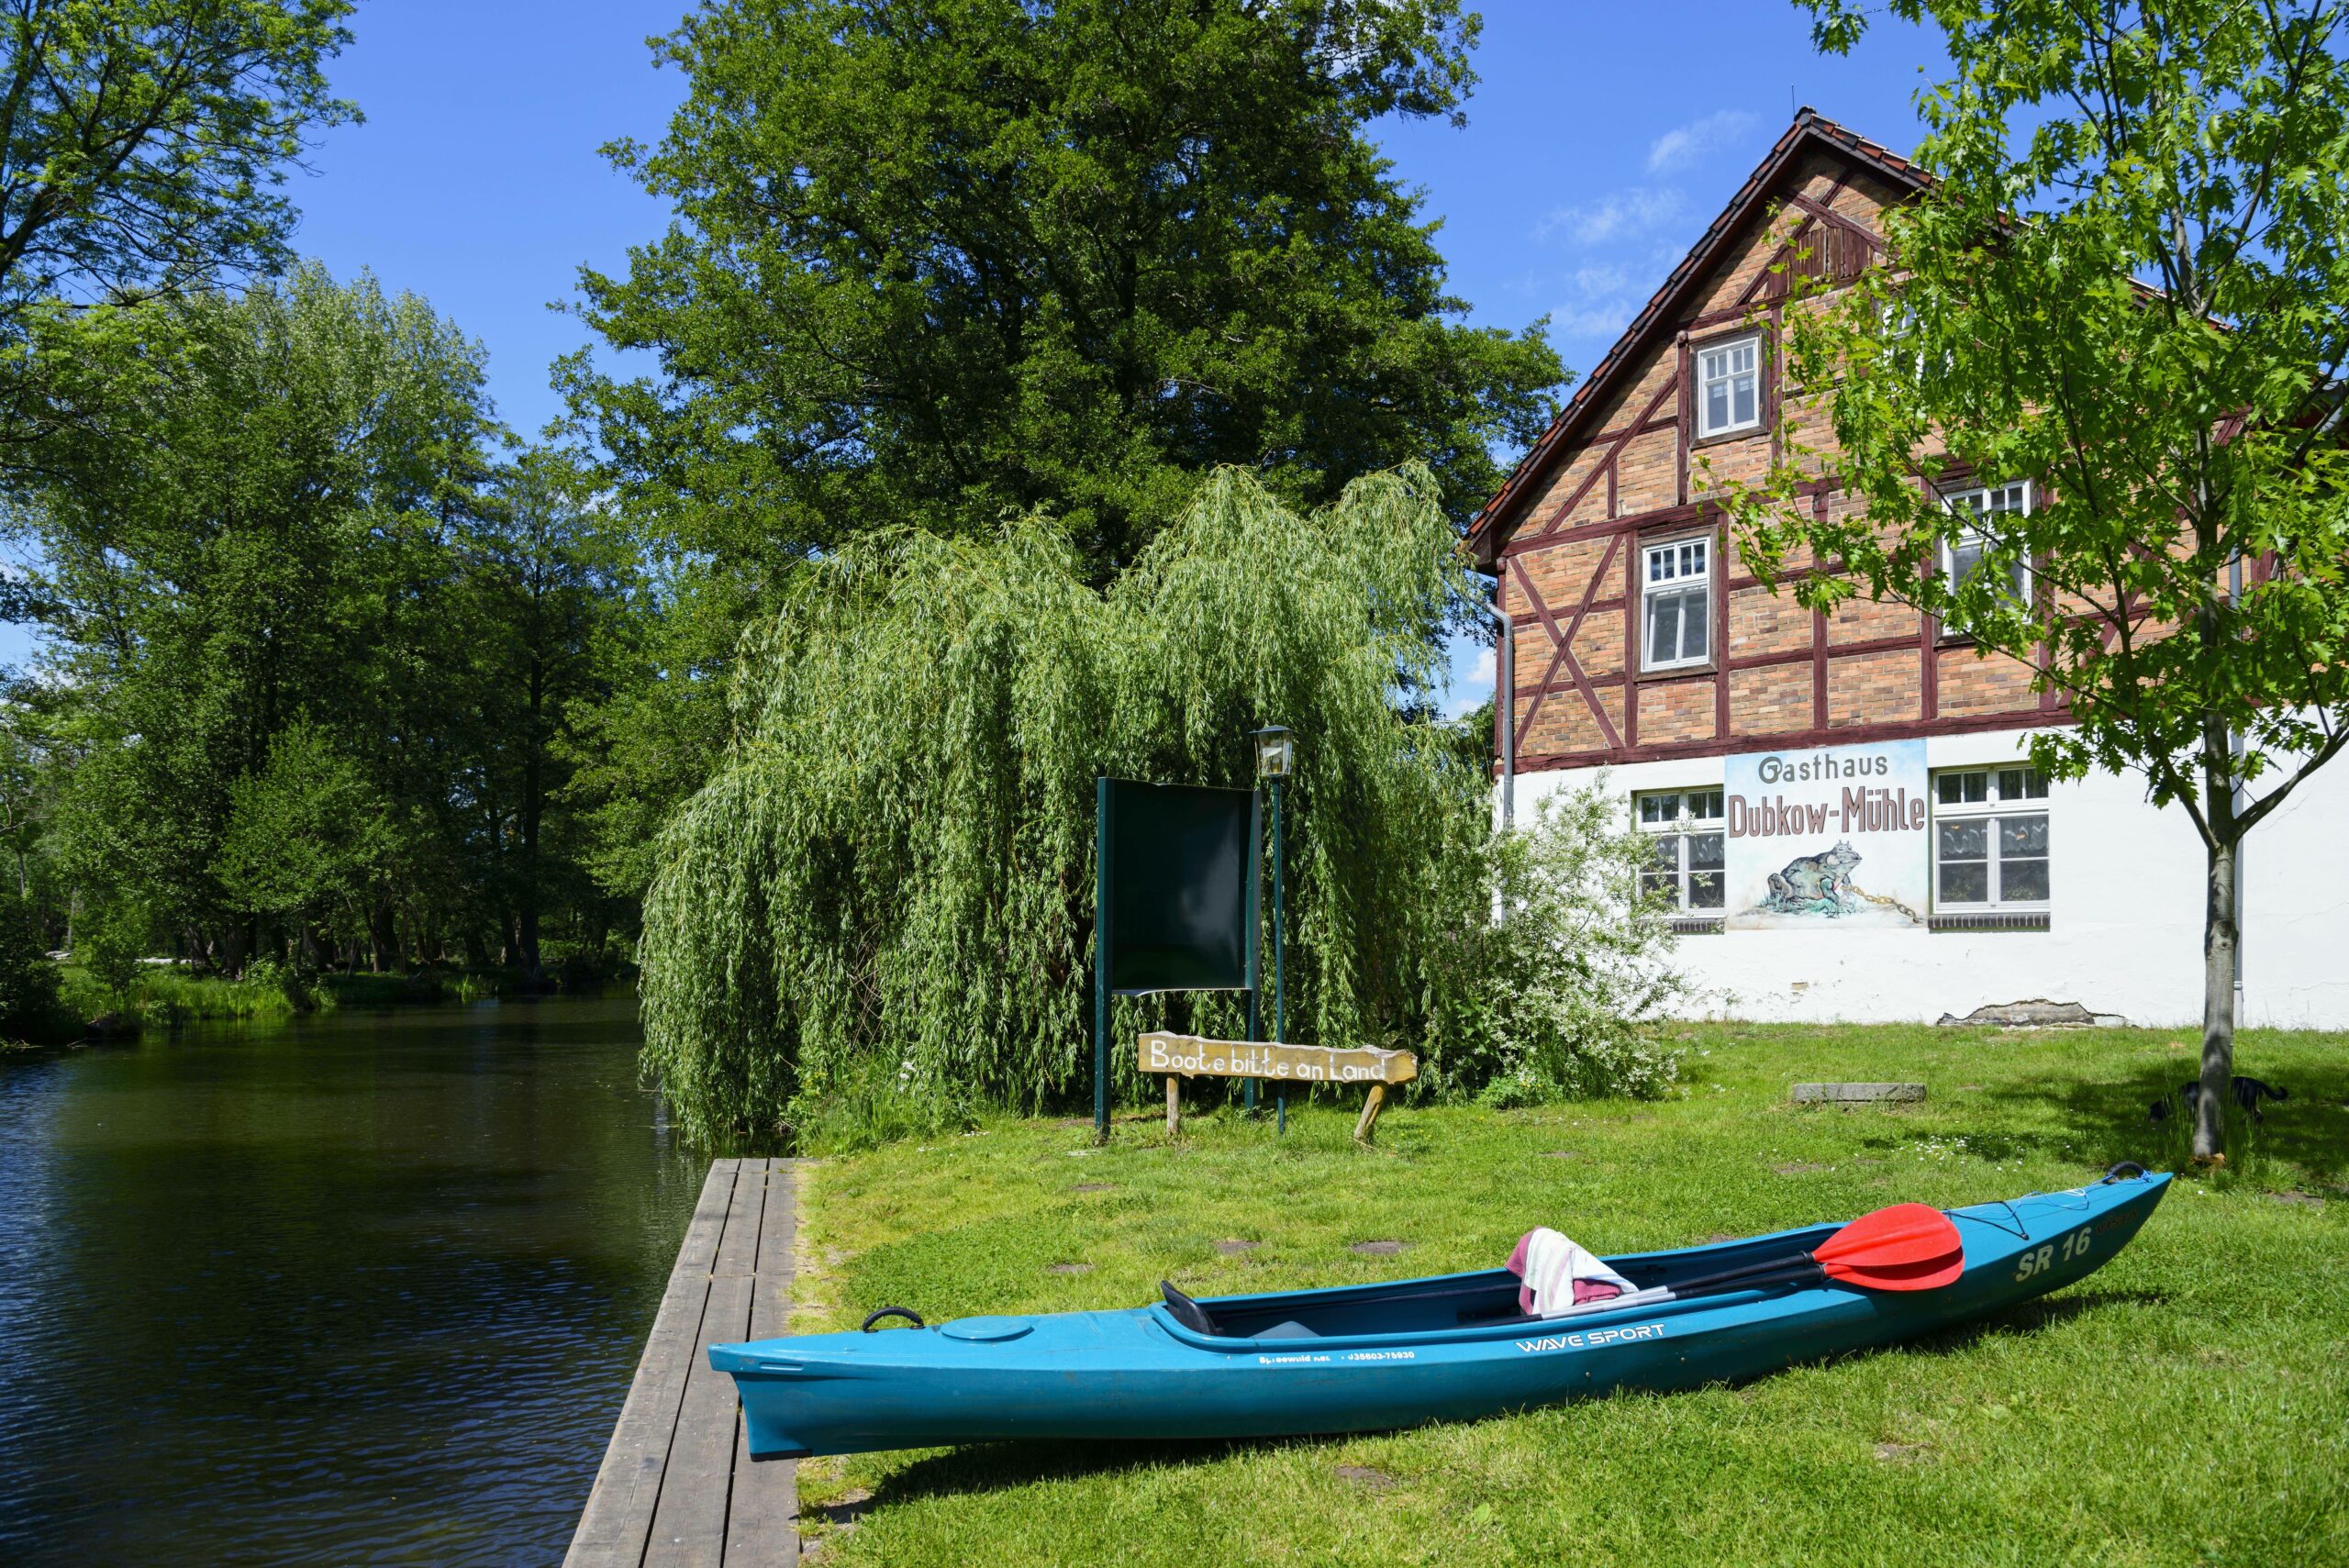 Die Dubkow-Mühle ist einer der ältesten Gasthäuser im Spreewald und gehört unbedingt in die Liste der  besten Restaurants im Landkreis Oberspreewald-Lausitz.